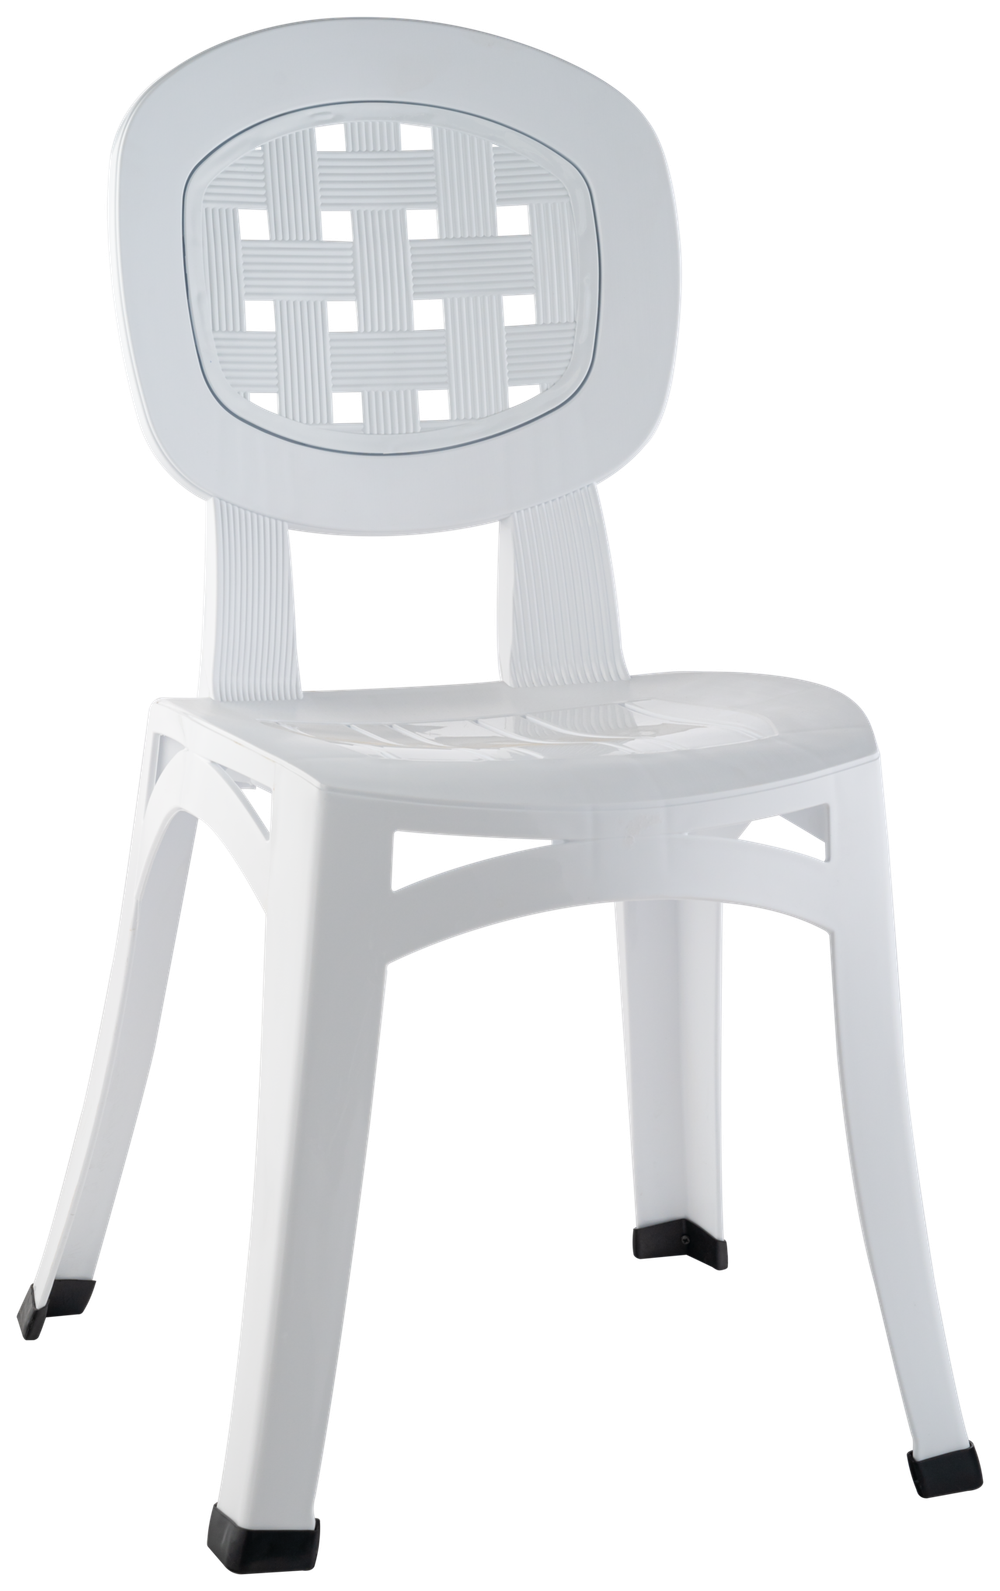 Самый крепкий пластиковый стул! Выдерживает до 250 кг! Купить оптом и в розницу!